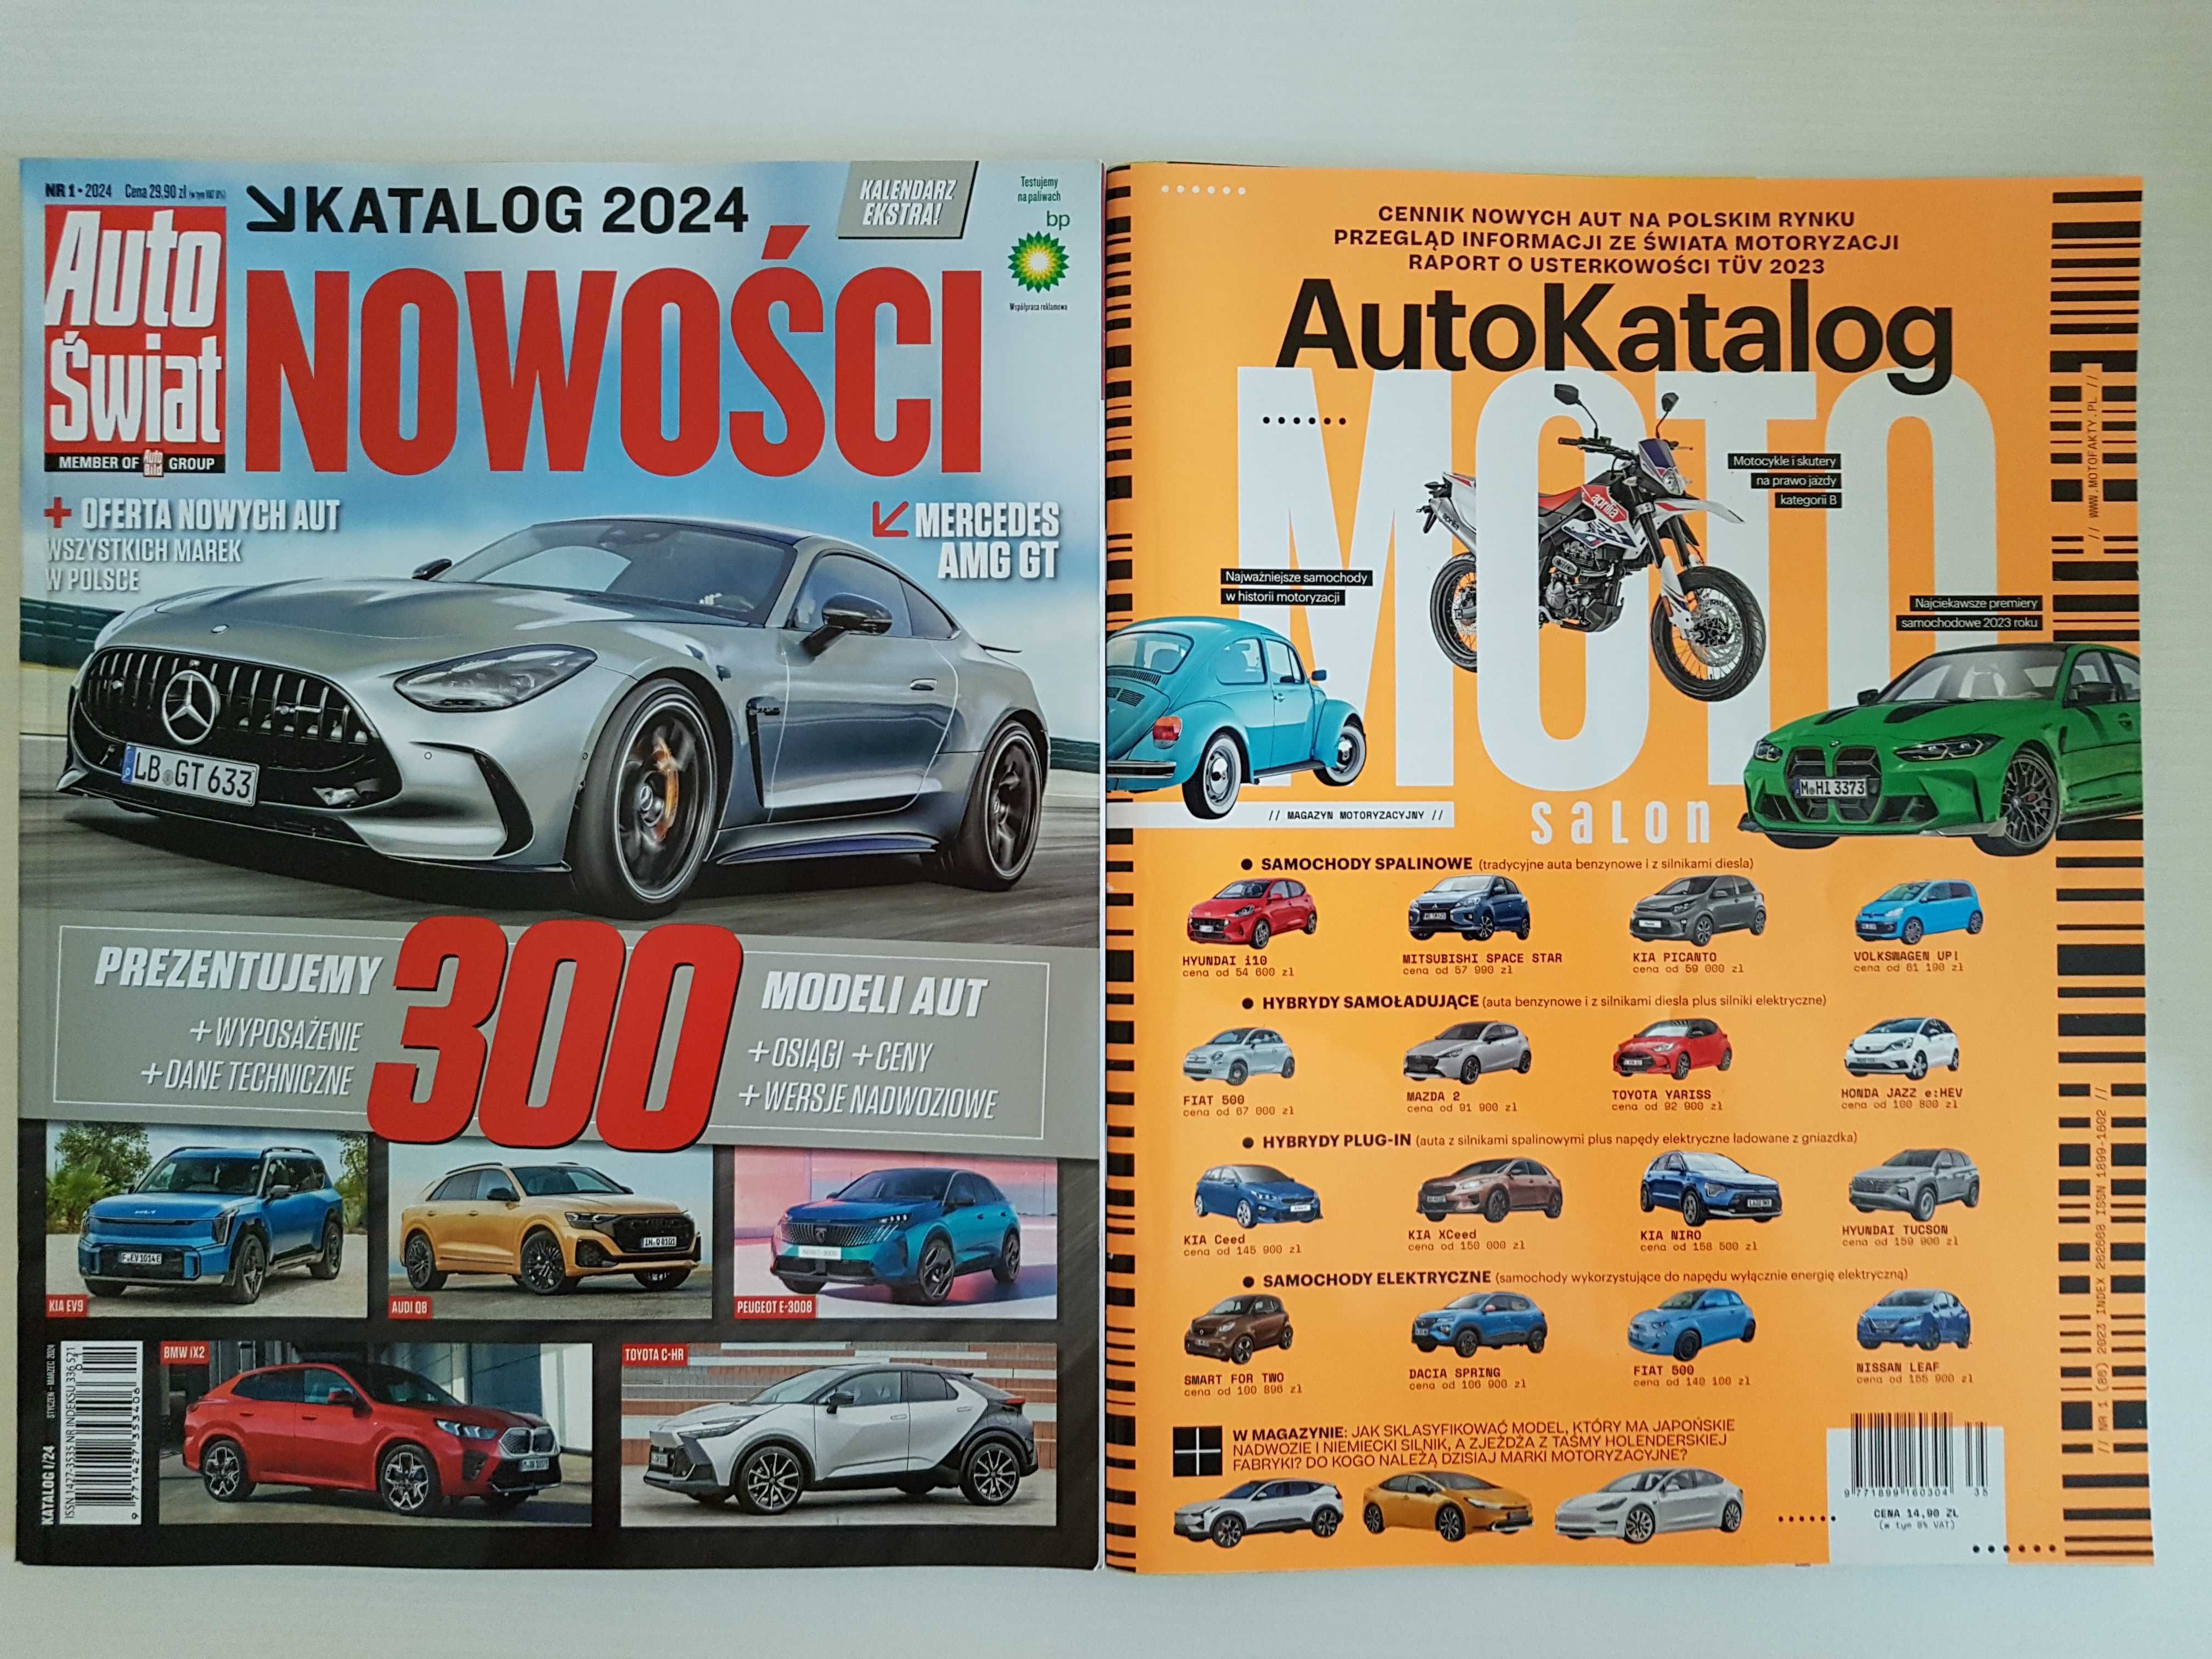 Auto Świat Katalog 2024 Nowości, MotoSalon AutoKatalog 2023